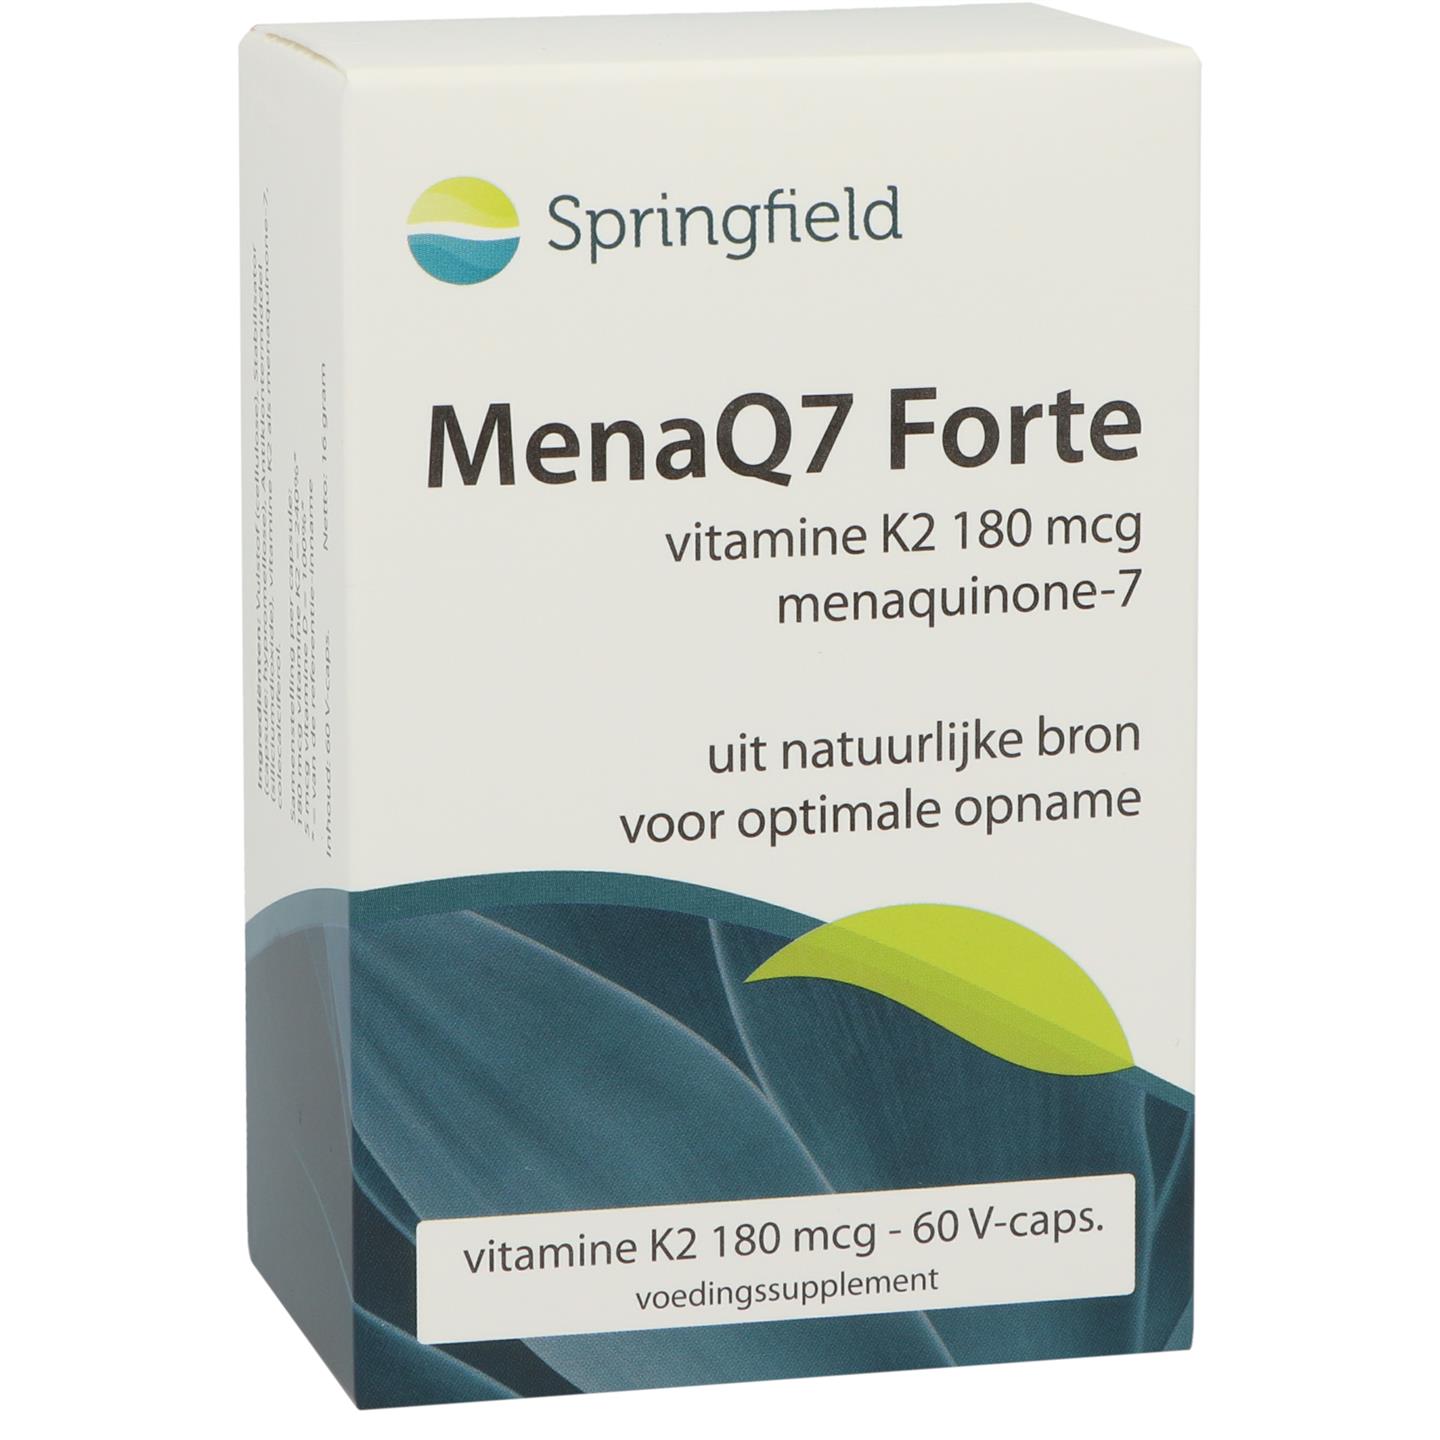 MenaQ7 Forte